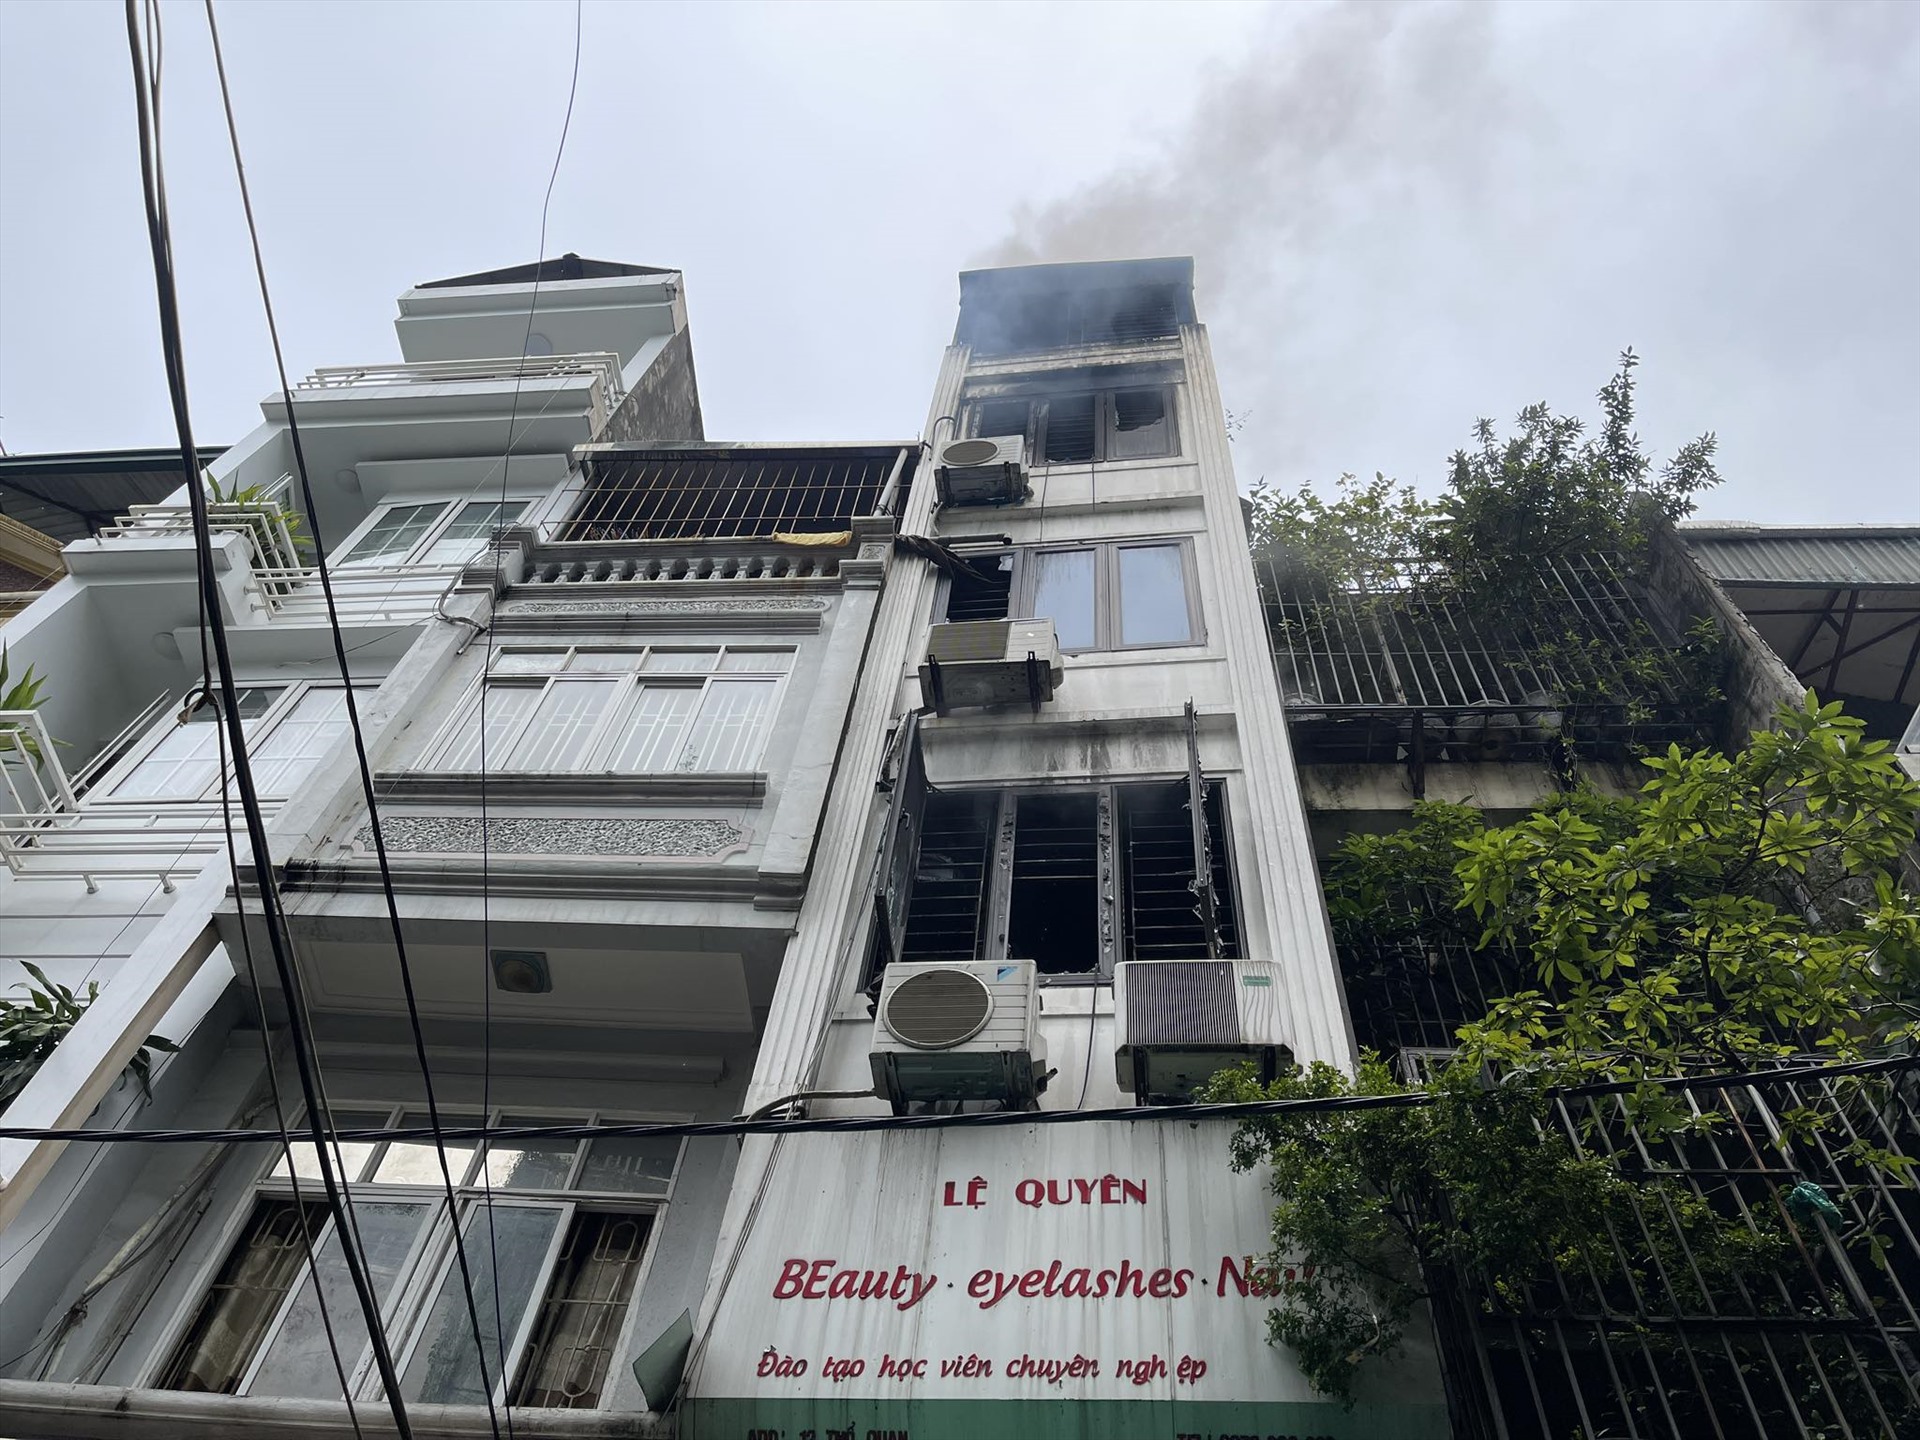 Vụ cháy 3 người tử vong ở Khâm Thiên: Mỗi cảnh sát chỉ tiếp cận được hiện trường 15 phút vì khói